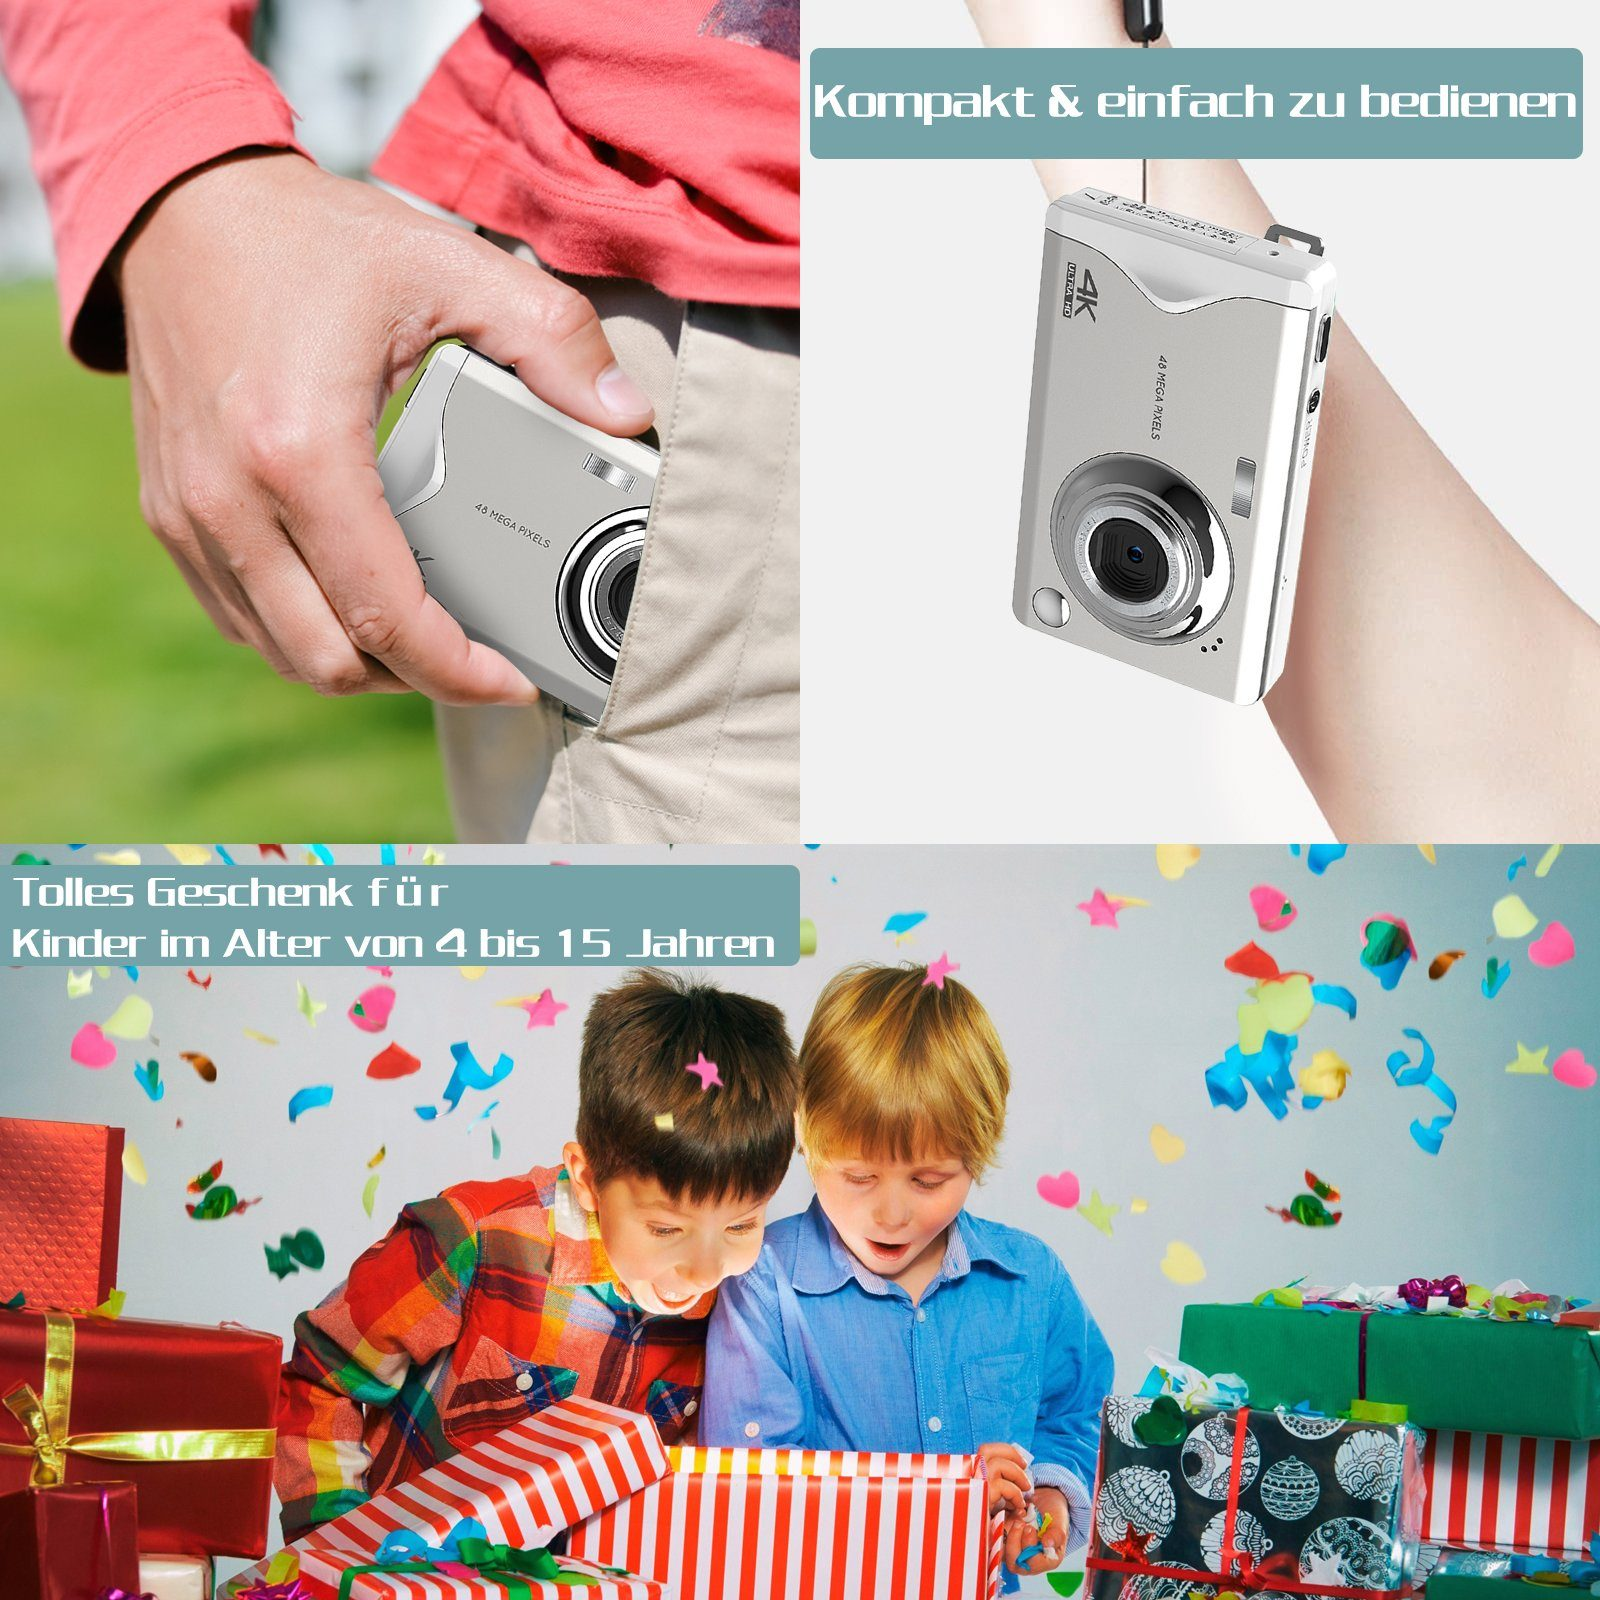 Weiß, Kamerafunktionen beiden opt. 4K-Aufruf48 Kinderkamera MP Kompaktkamera Pixel, 48 Karte-Kamera Zoom 16X mit Mio. LINGDA